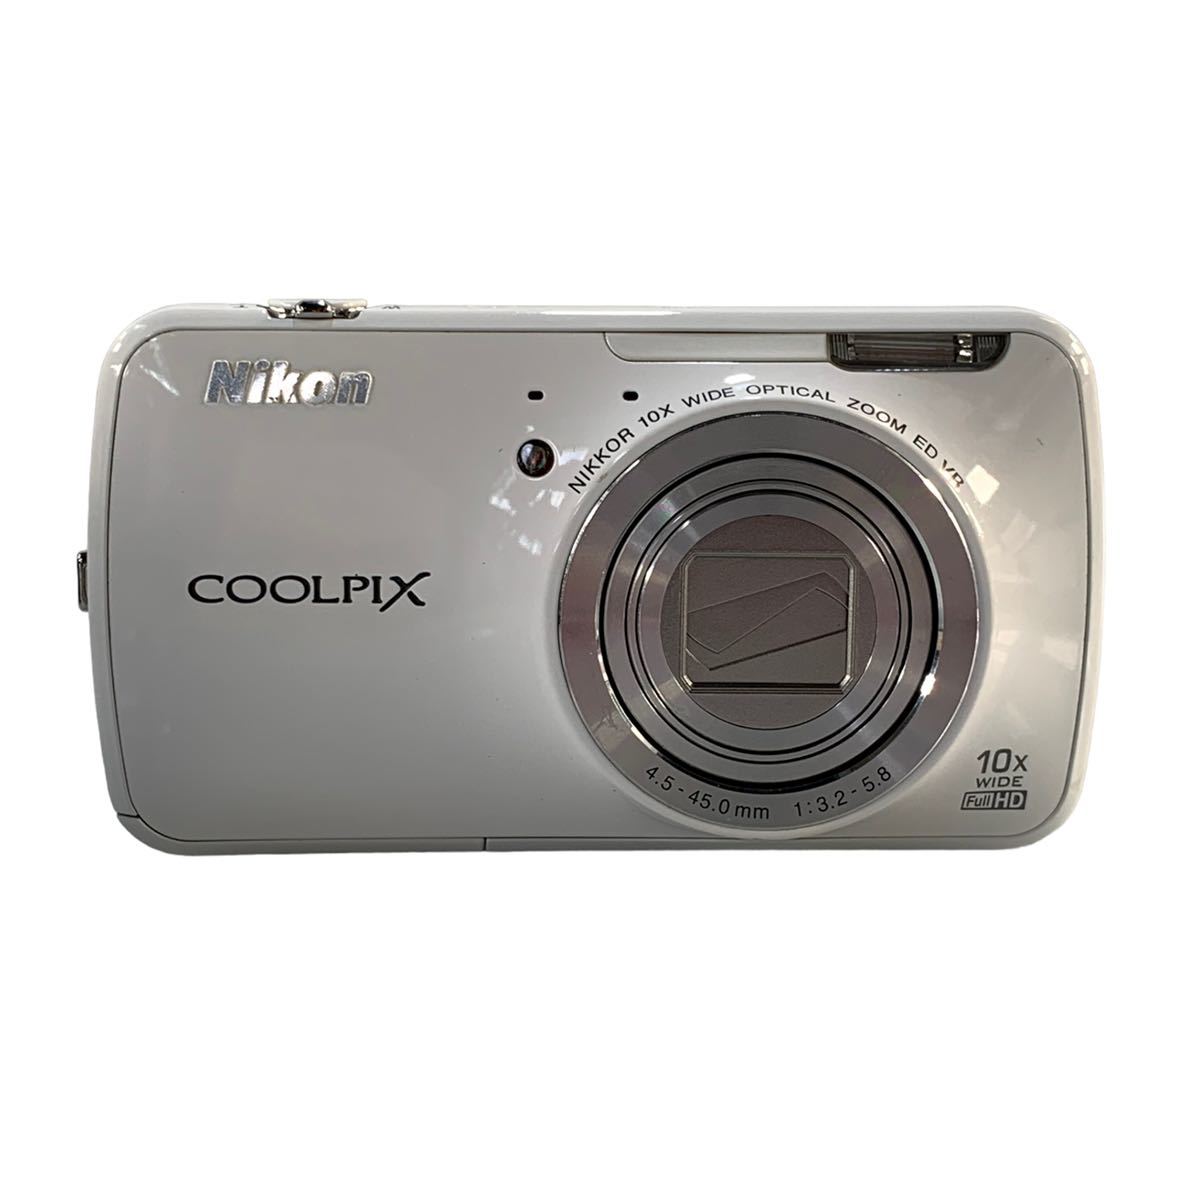 ★美品 動作確認済み Nikon ニコン COOLPIX S800c コンパクトデジタルカメラ ホワイト 4.5-45.0㎜ 1:3.2-5.8 中古品 付属品 管理J244_画像3